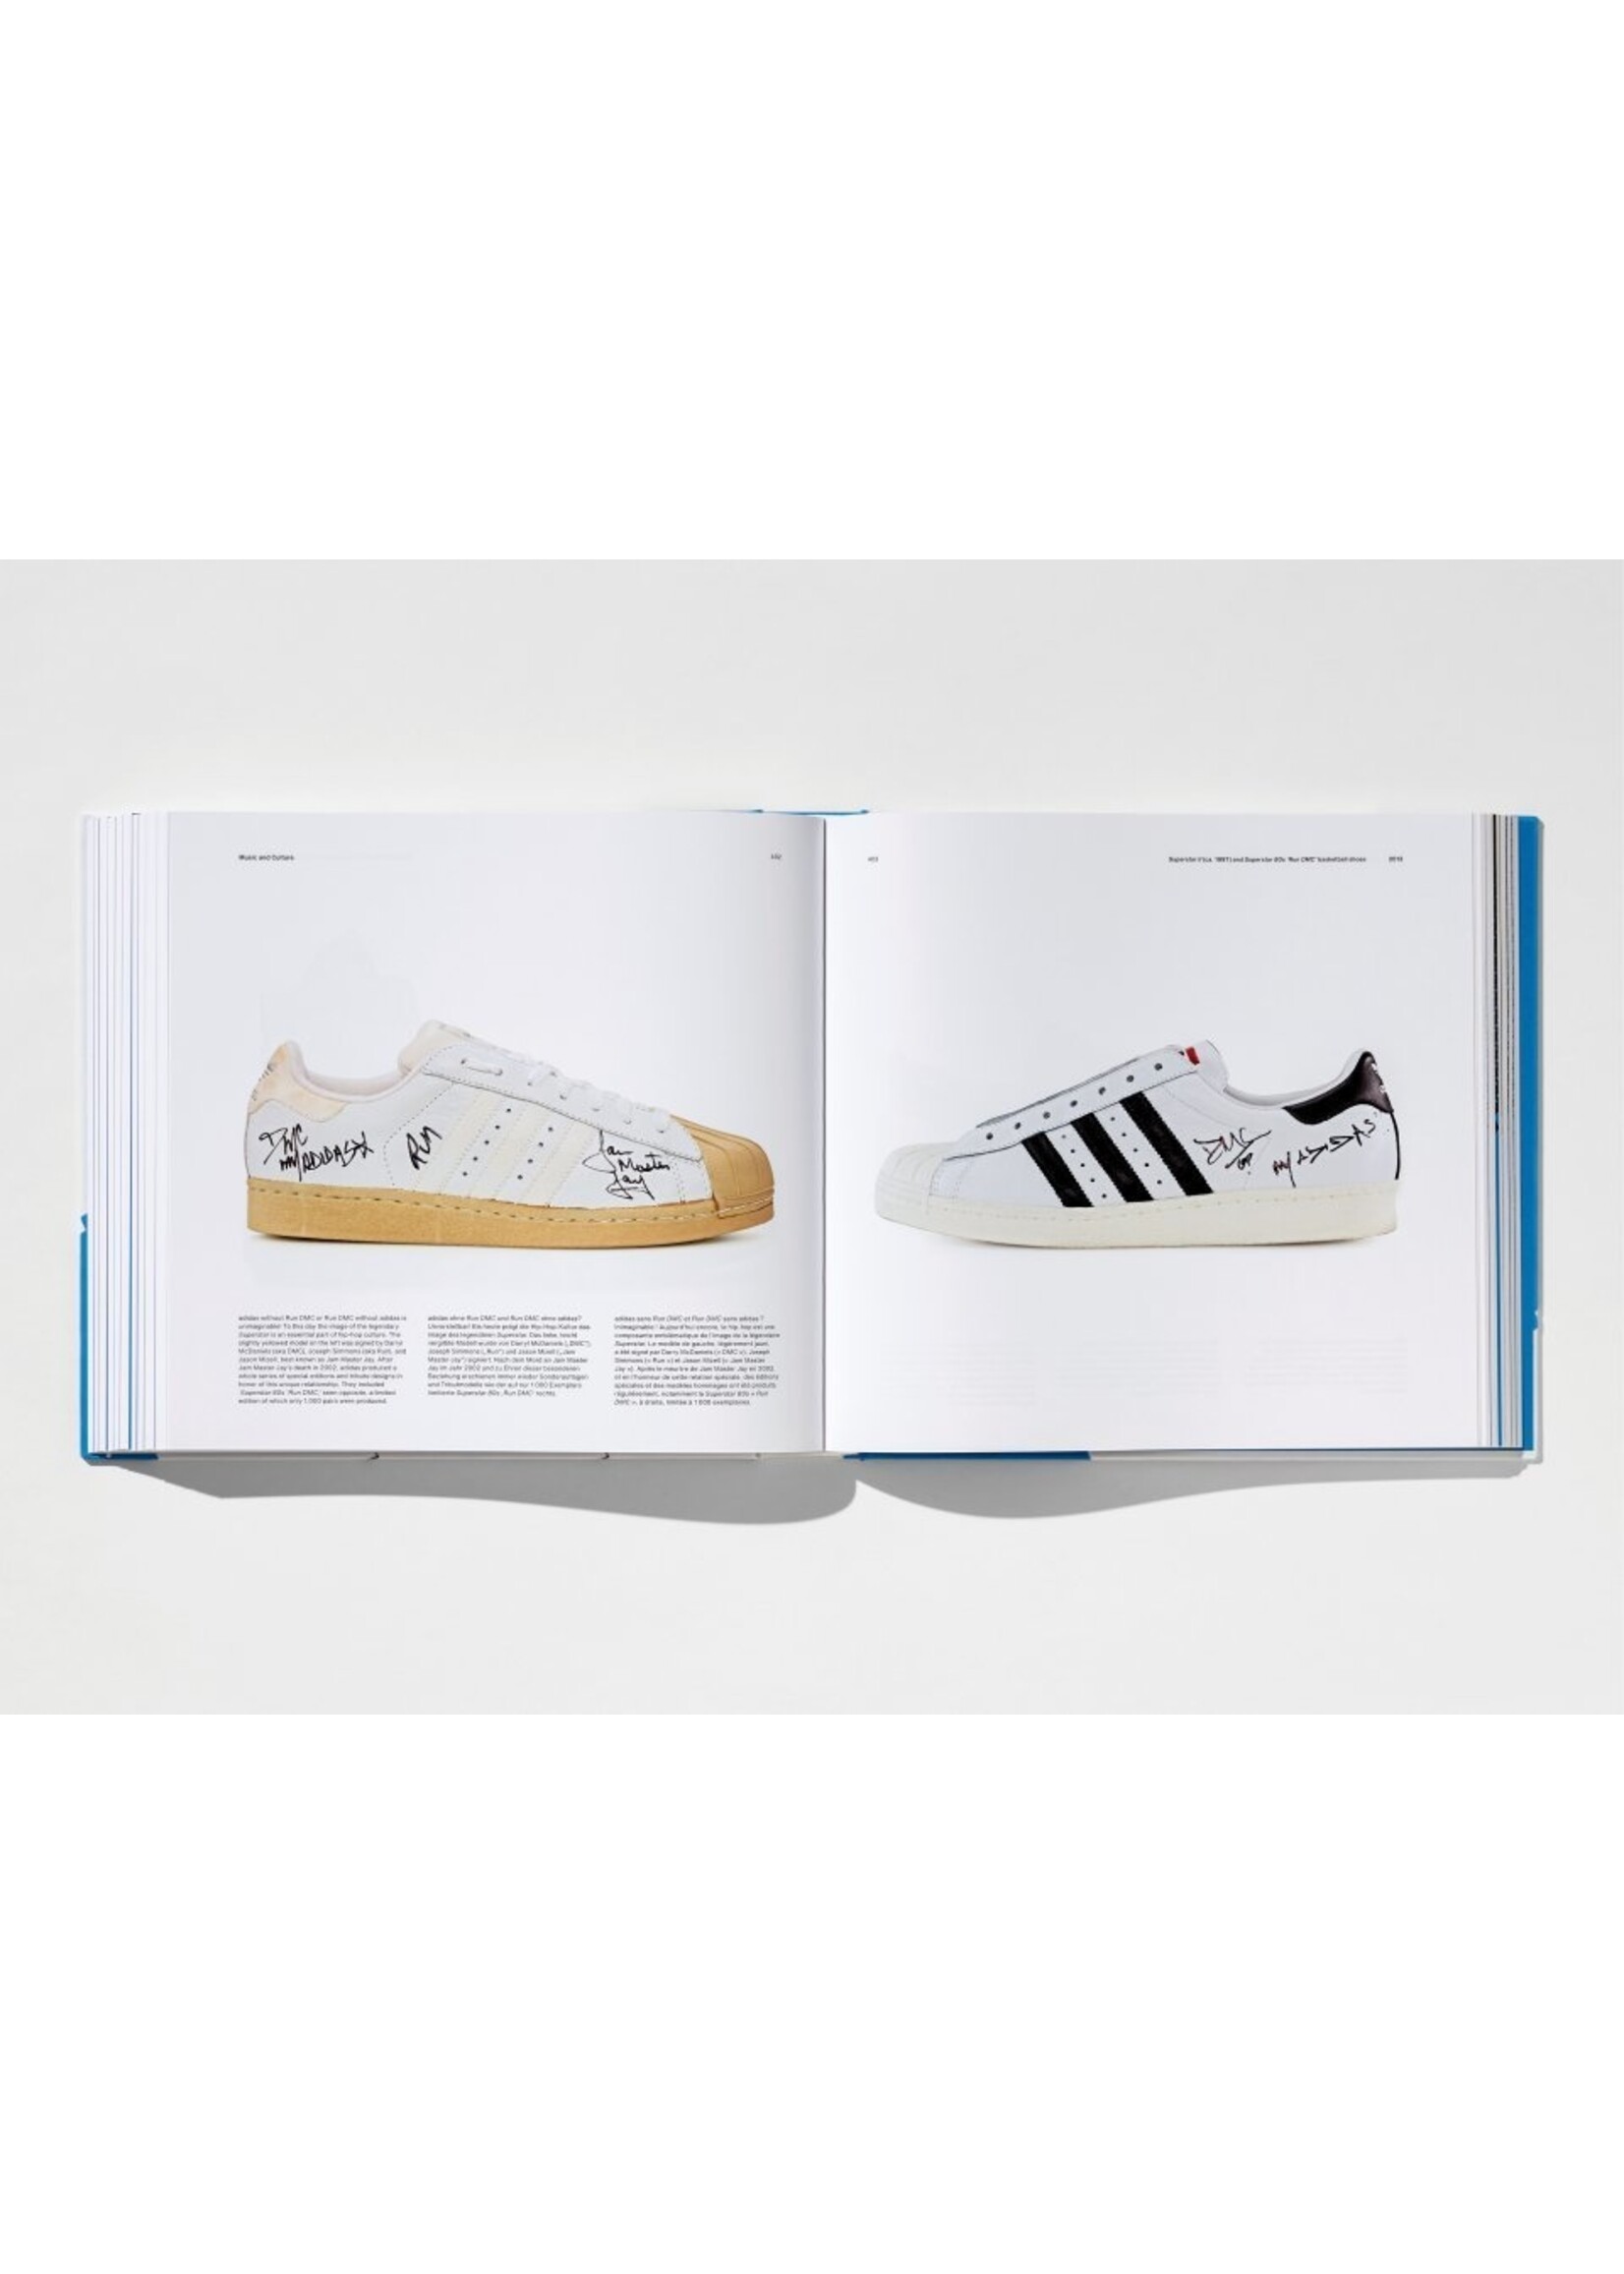 TASCHEN TASCHEN - The adidas Archive - The Footwear Collection